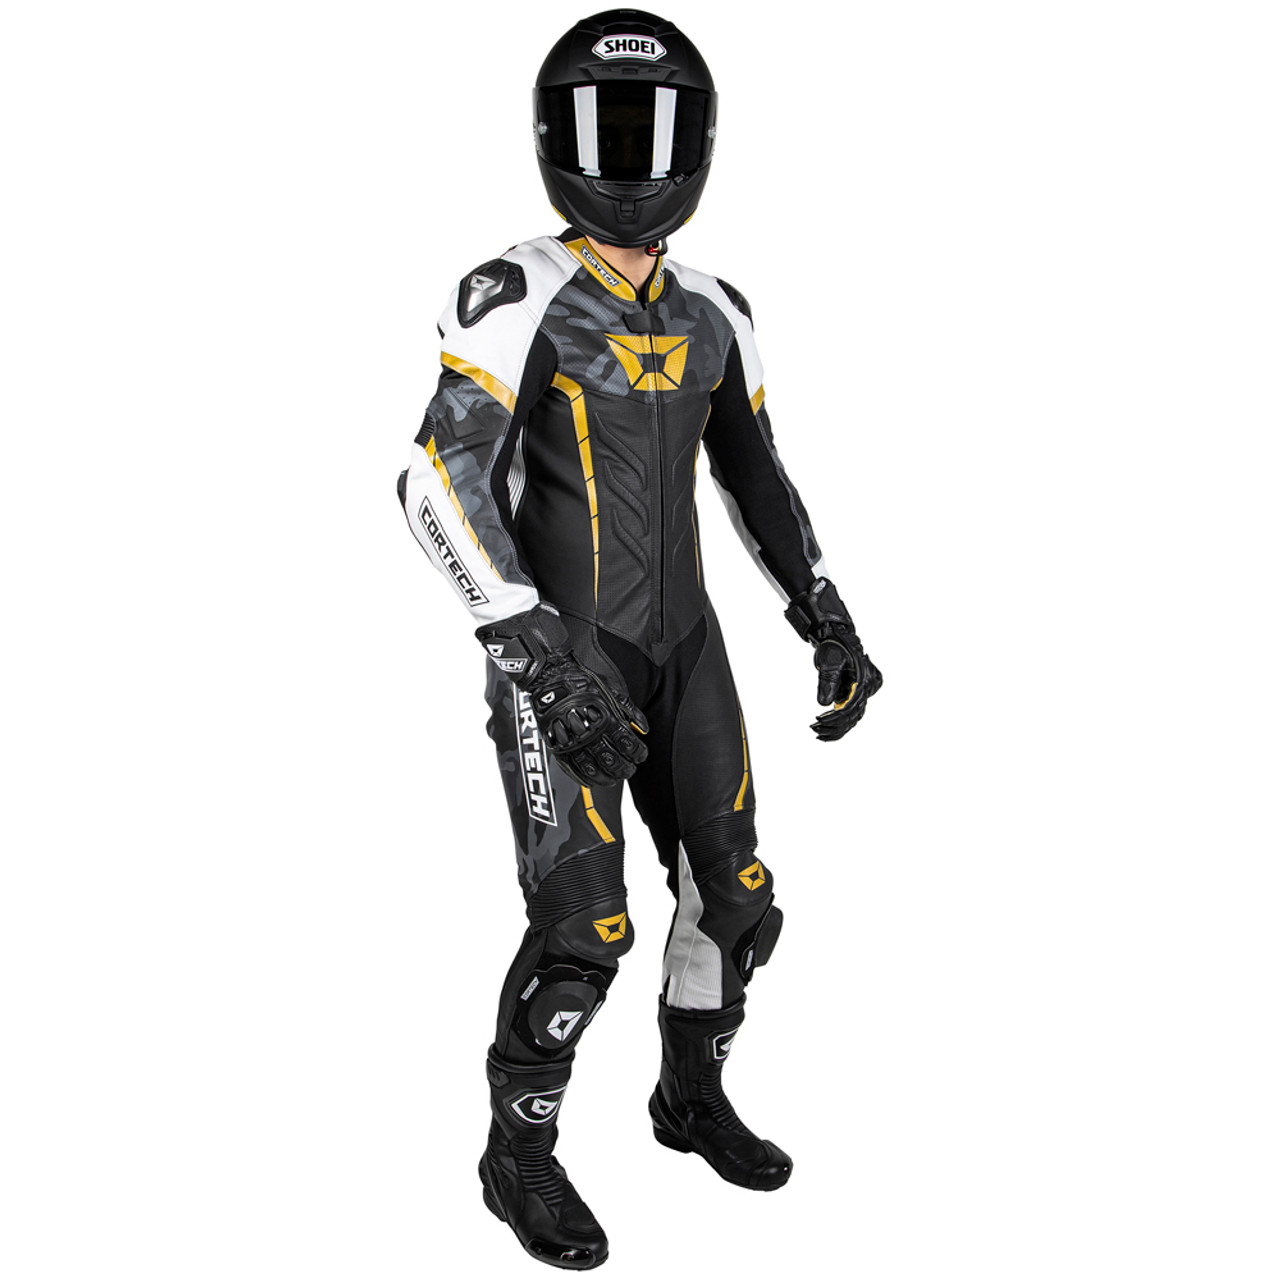 Cortech Adrenaline Gp One Piece Leather Race Suit Sportbike Track Gear